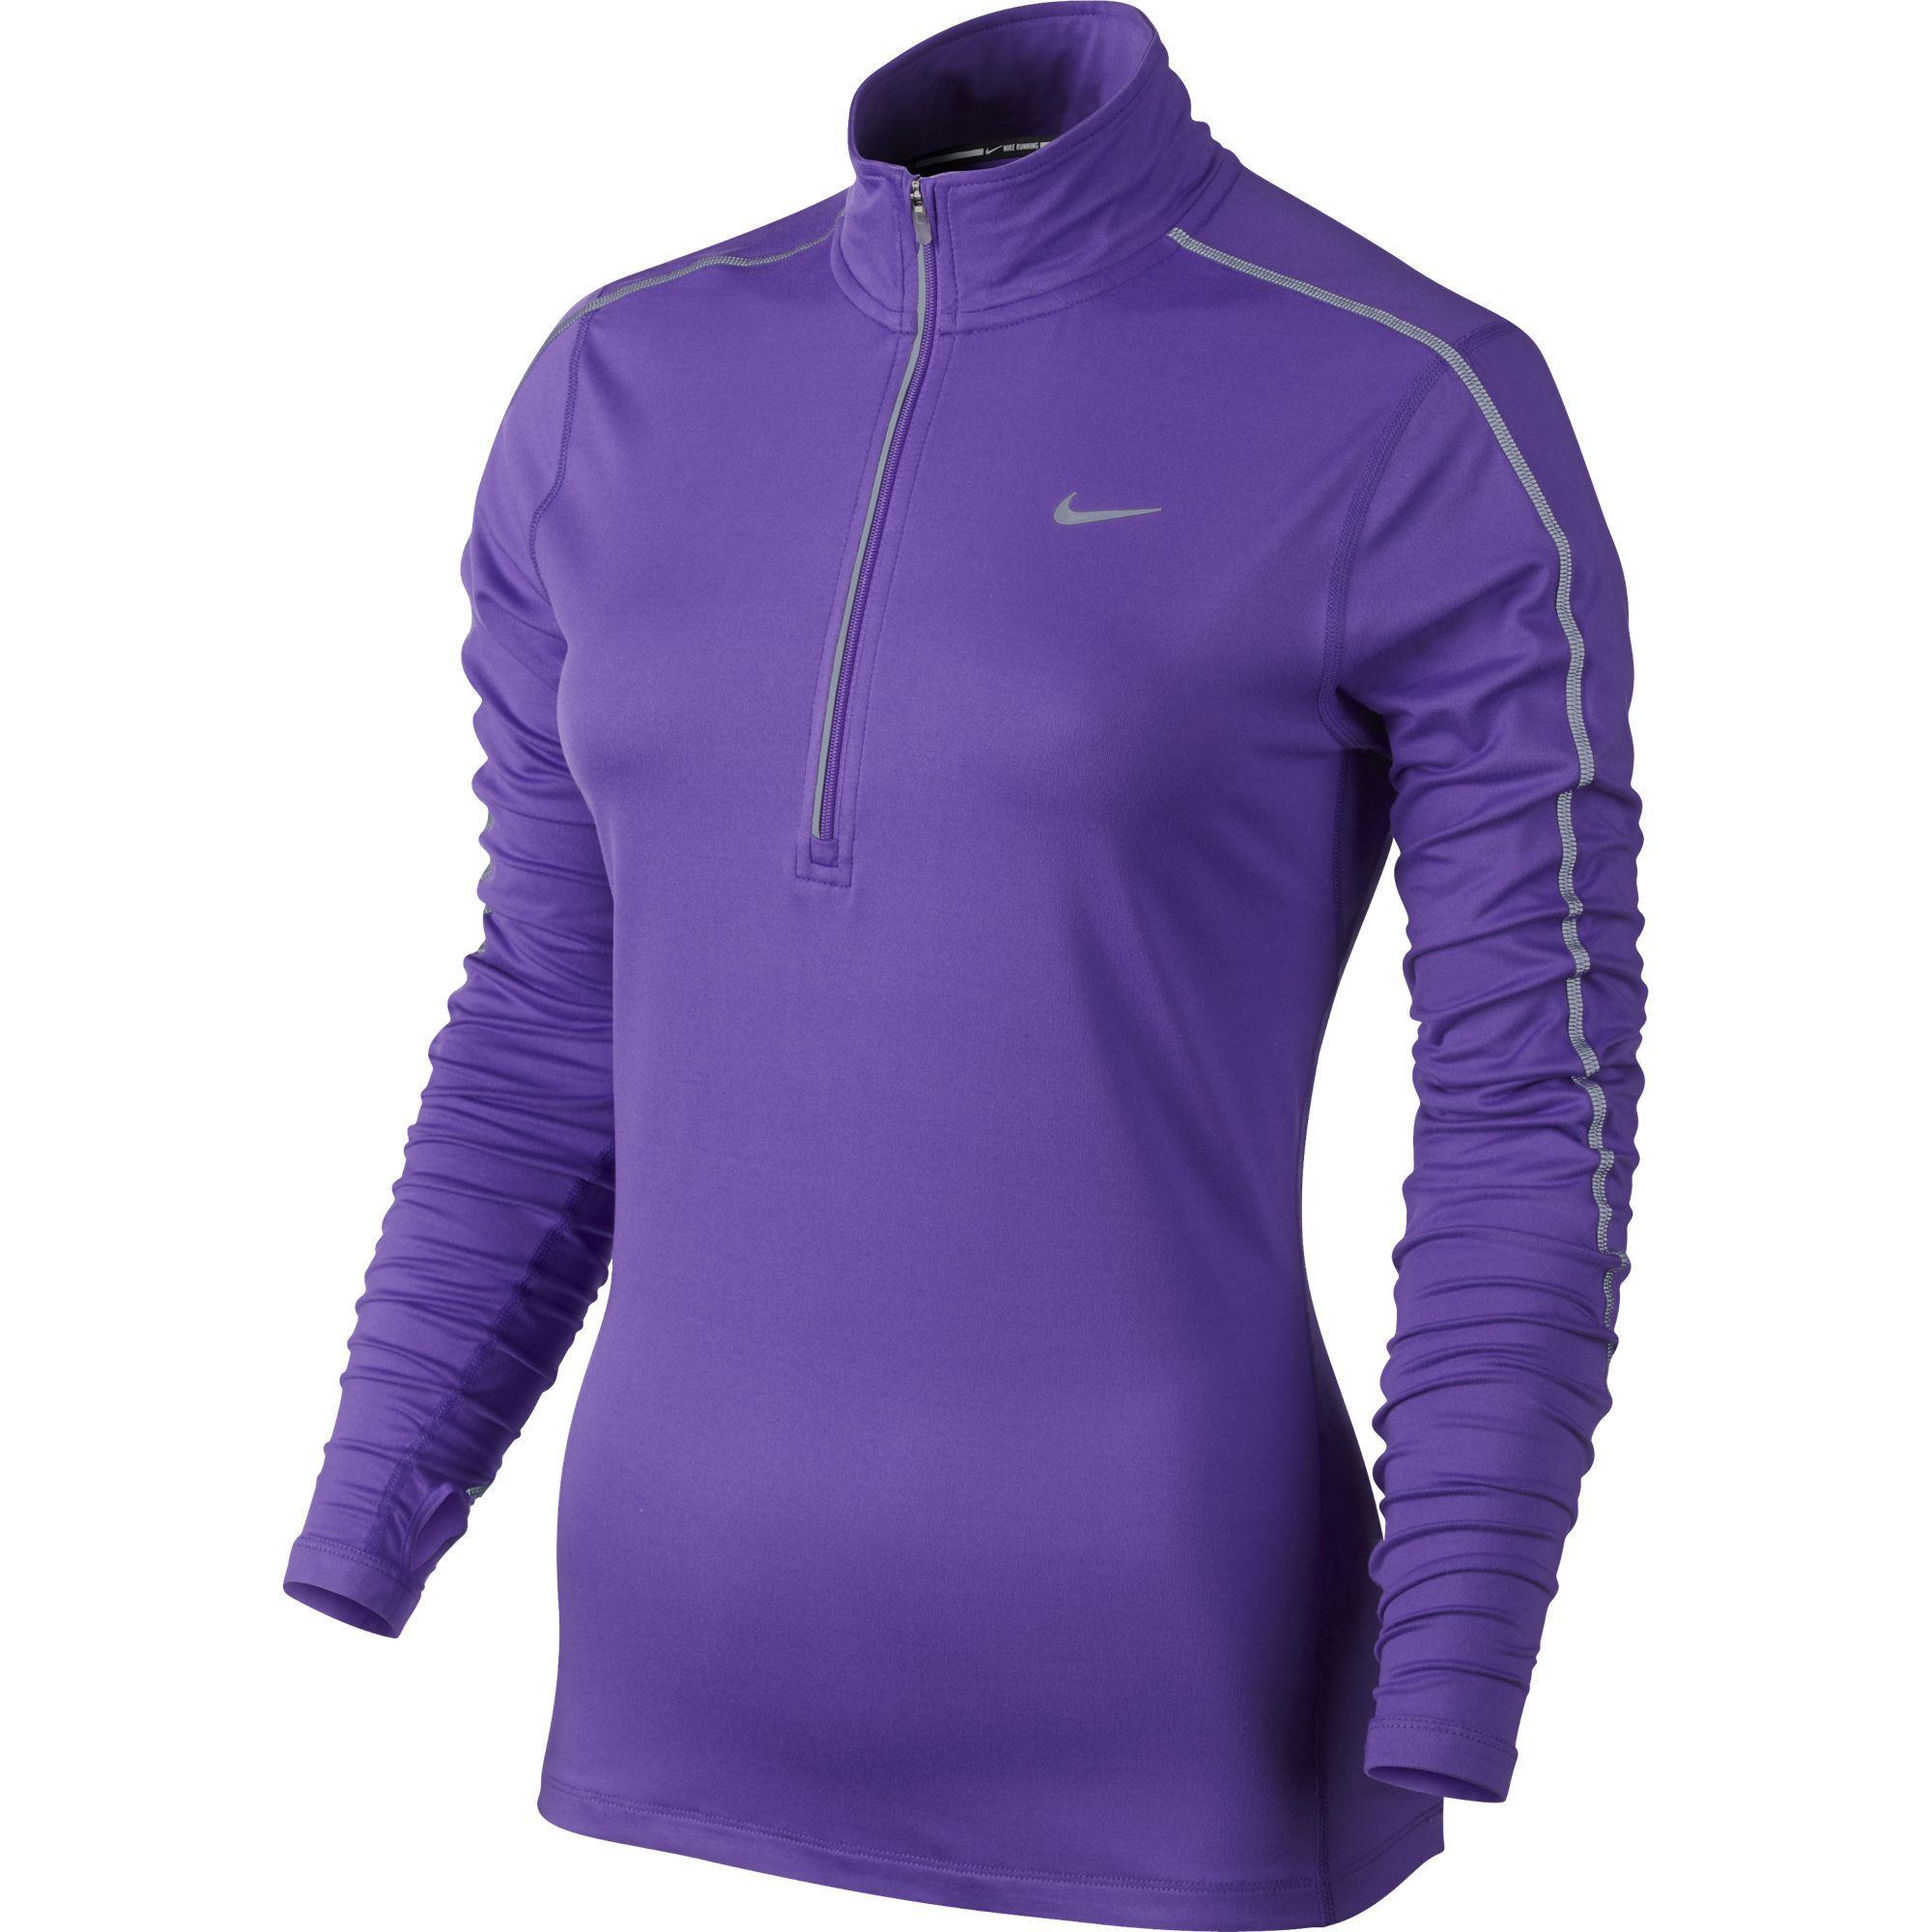 Nike Womens Reflective Element 1/2 Zip LS Running Top - Hyper Grape ...